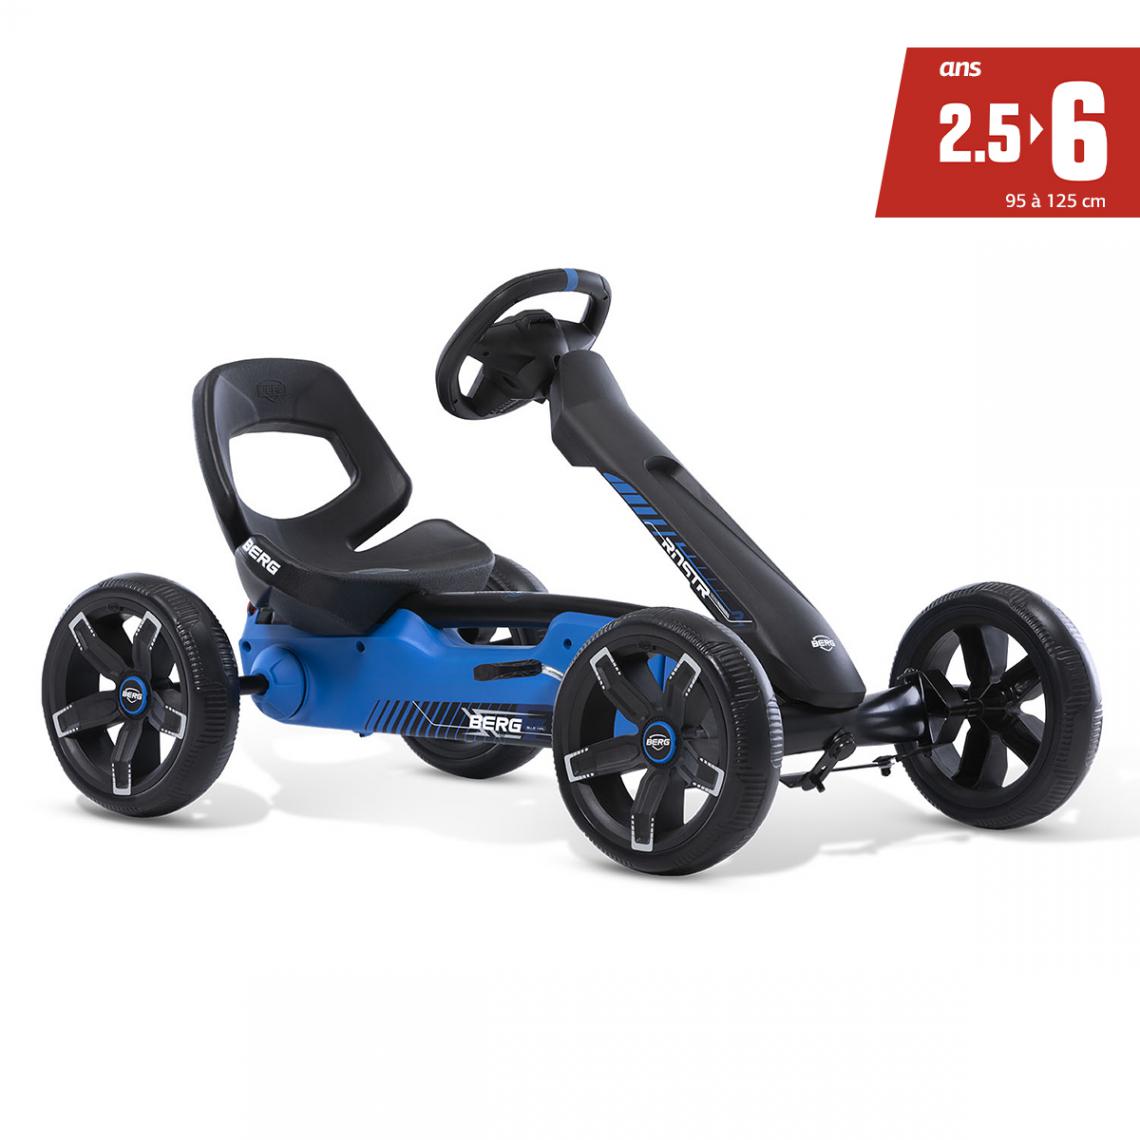 Berg Toys - Kart à pédales Reppy Roadster - De 2,5 à 6 ans - Véhicule à pédales